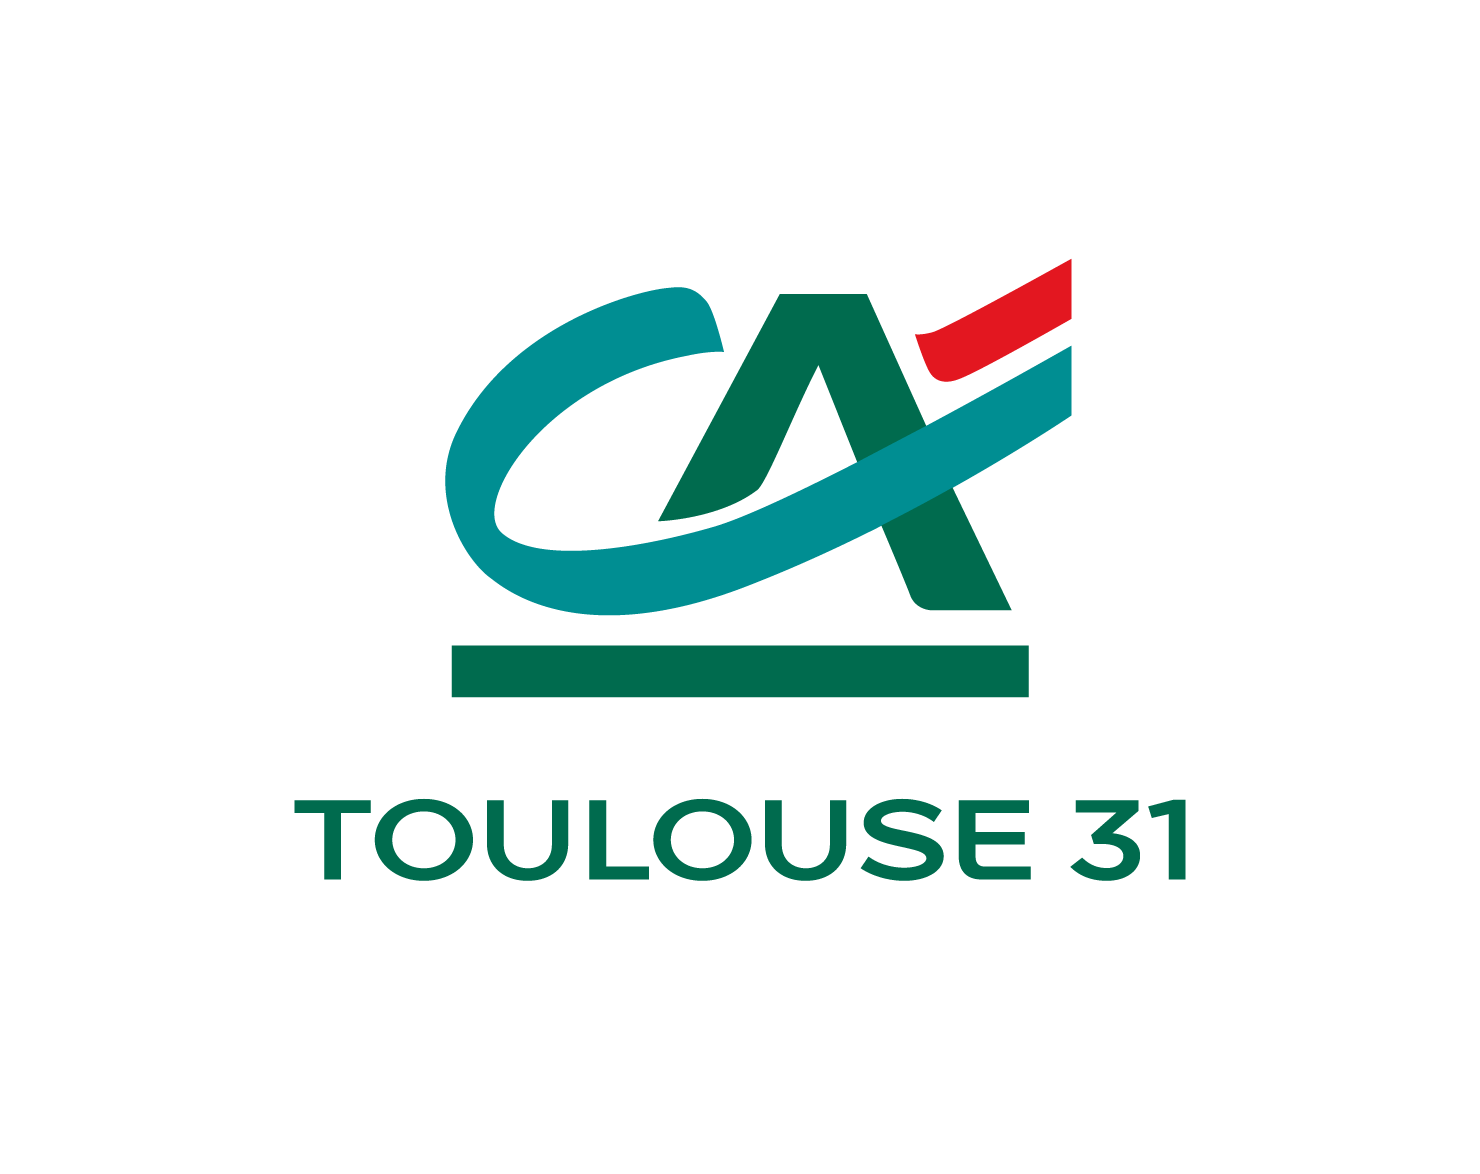 ca-Toulouse_31-v-RVB